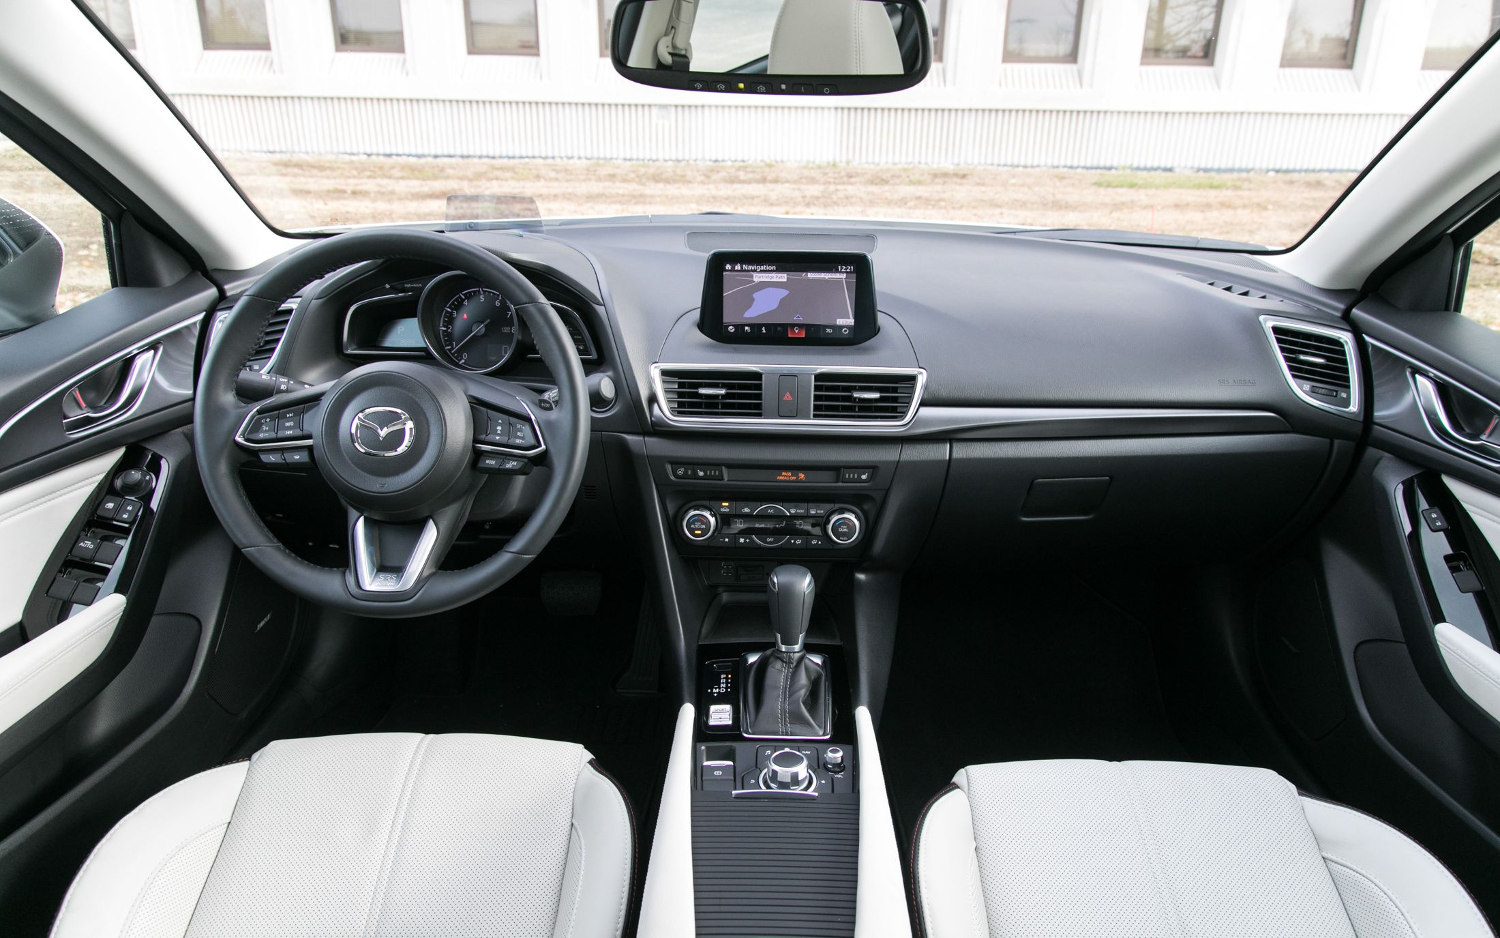 Comparison Mazda 3 Grand Touring 2018 Vs Opel Antara